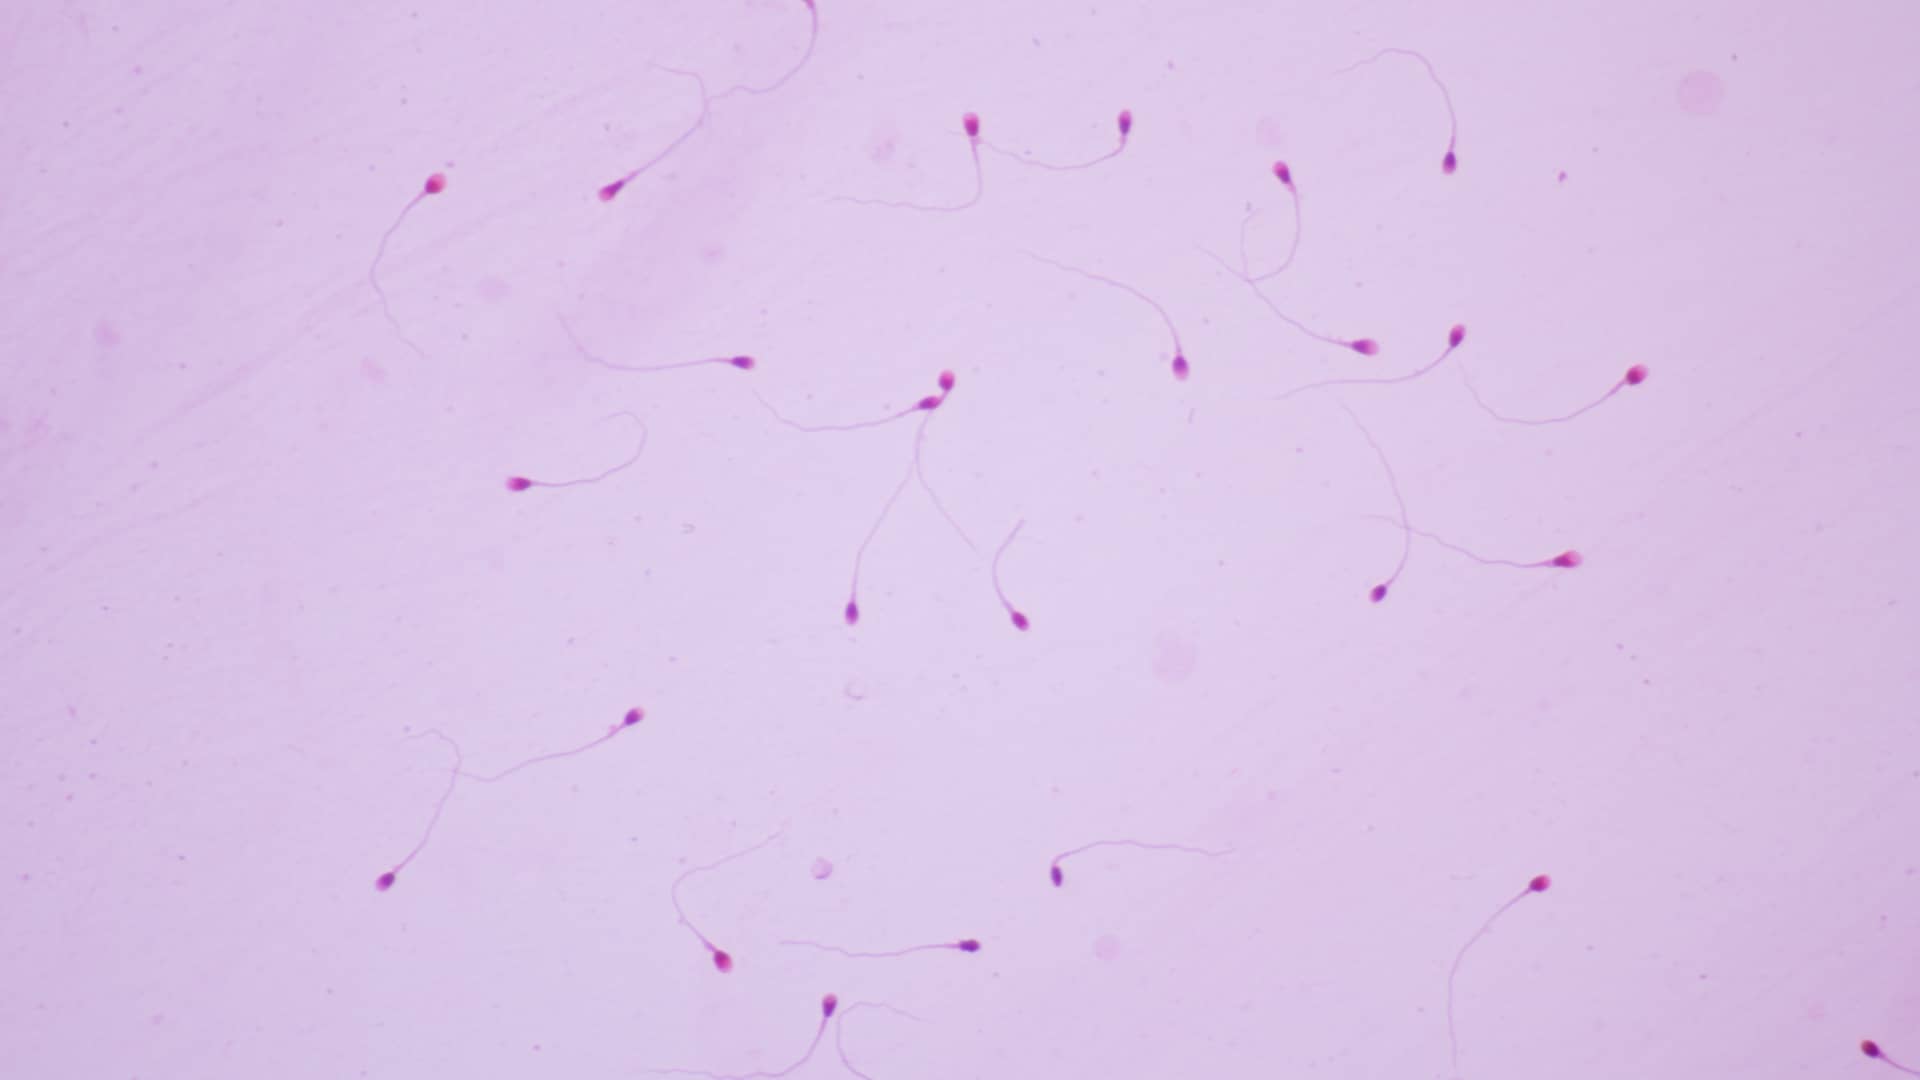 Muetsra vista en el microscopio de semen que representa la necrozoospermia que es un ejemplo de esterilidad masculina